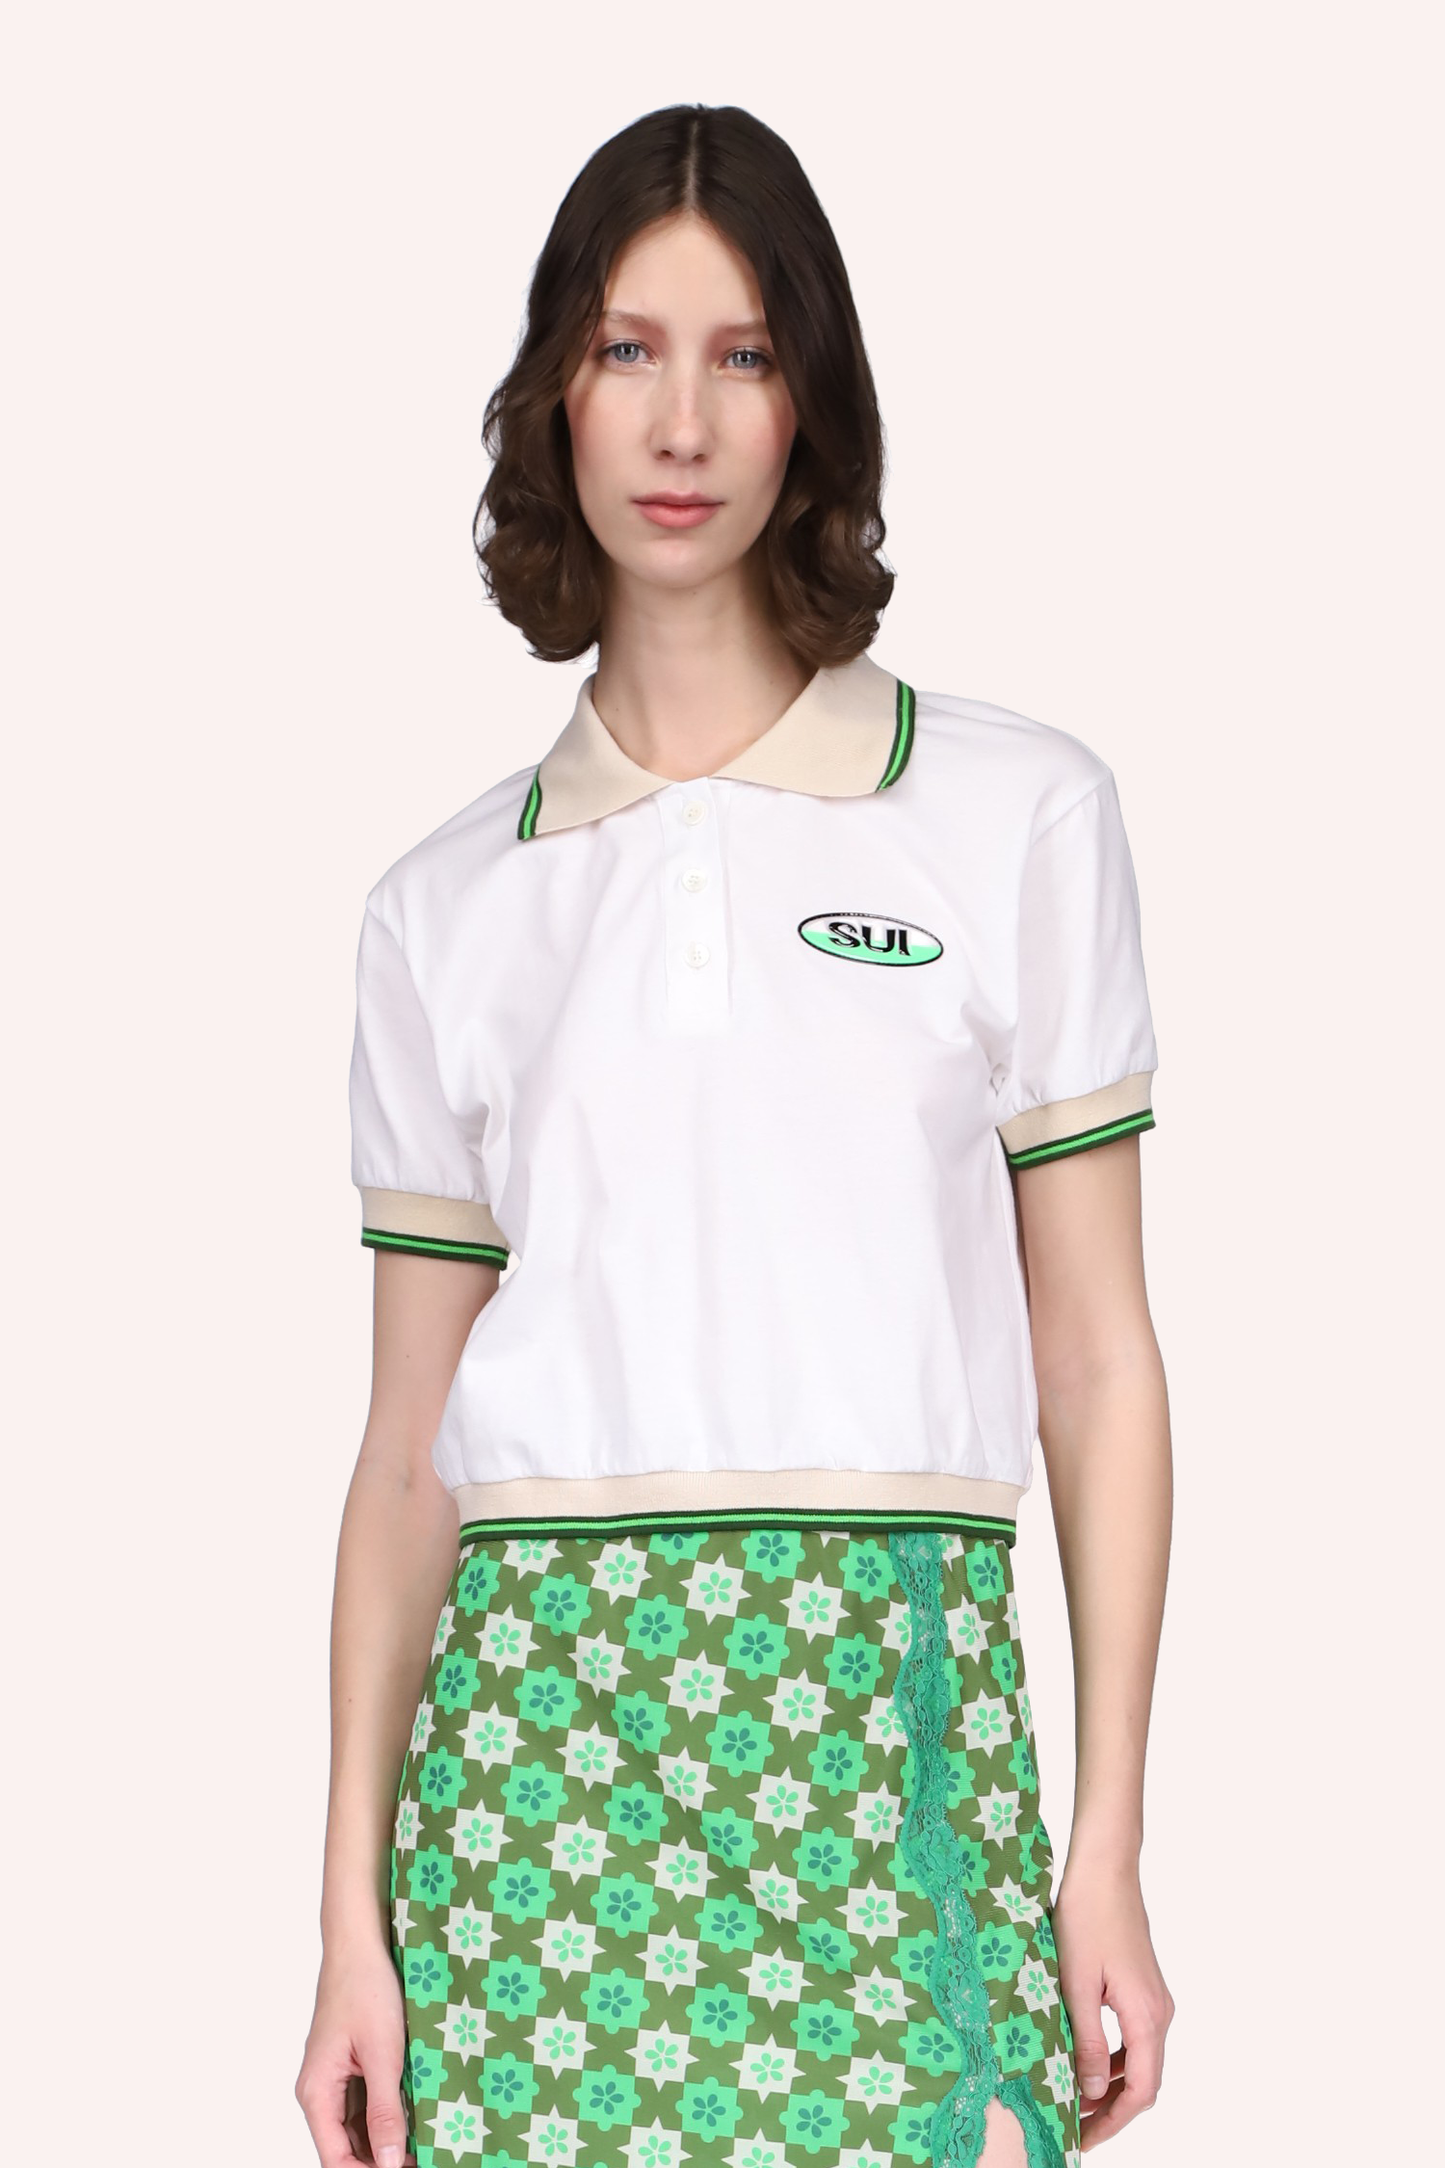 Deco Polo Tee Neon Green, t-shirt bianca, cuciture con linee beige e verdi, etichetta SUI a sinistra